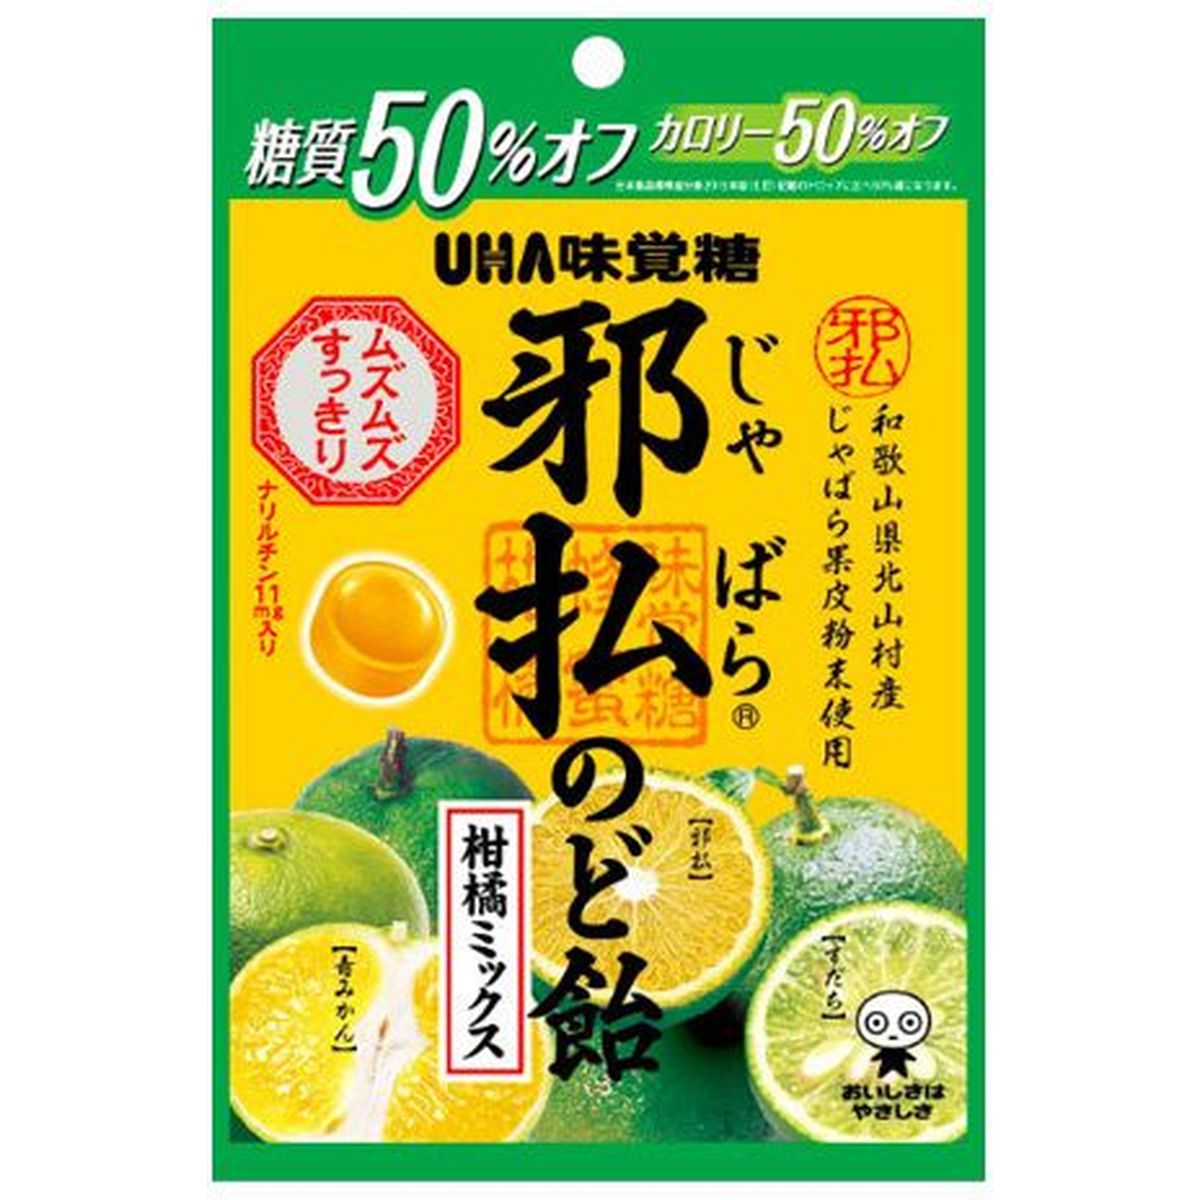 【6個入リ】UHA味覚糖 邪払ノド飴 柑橘ミックス 72g